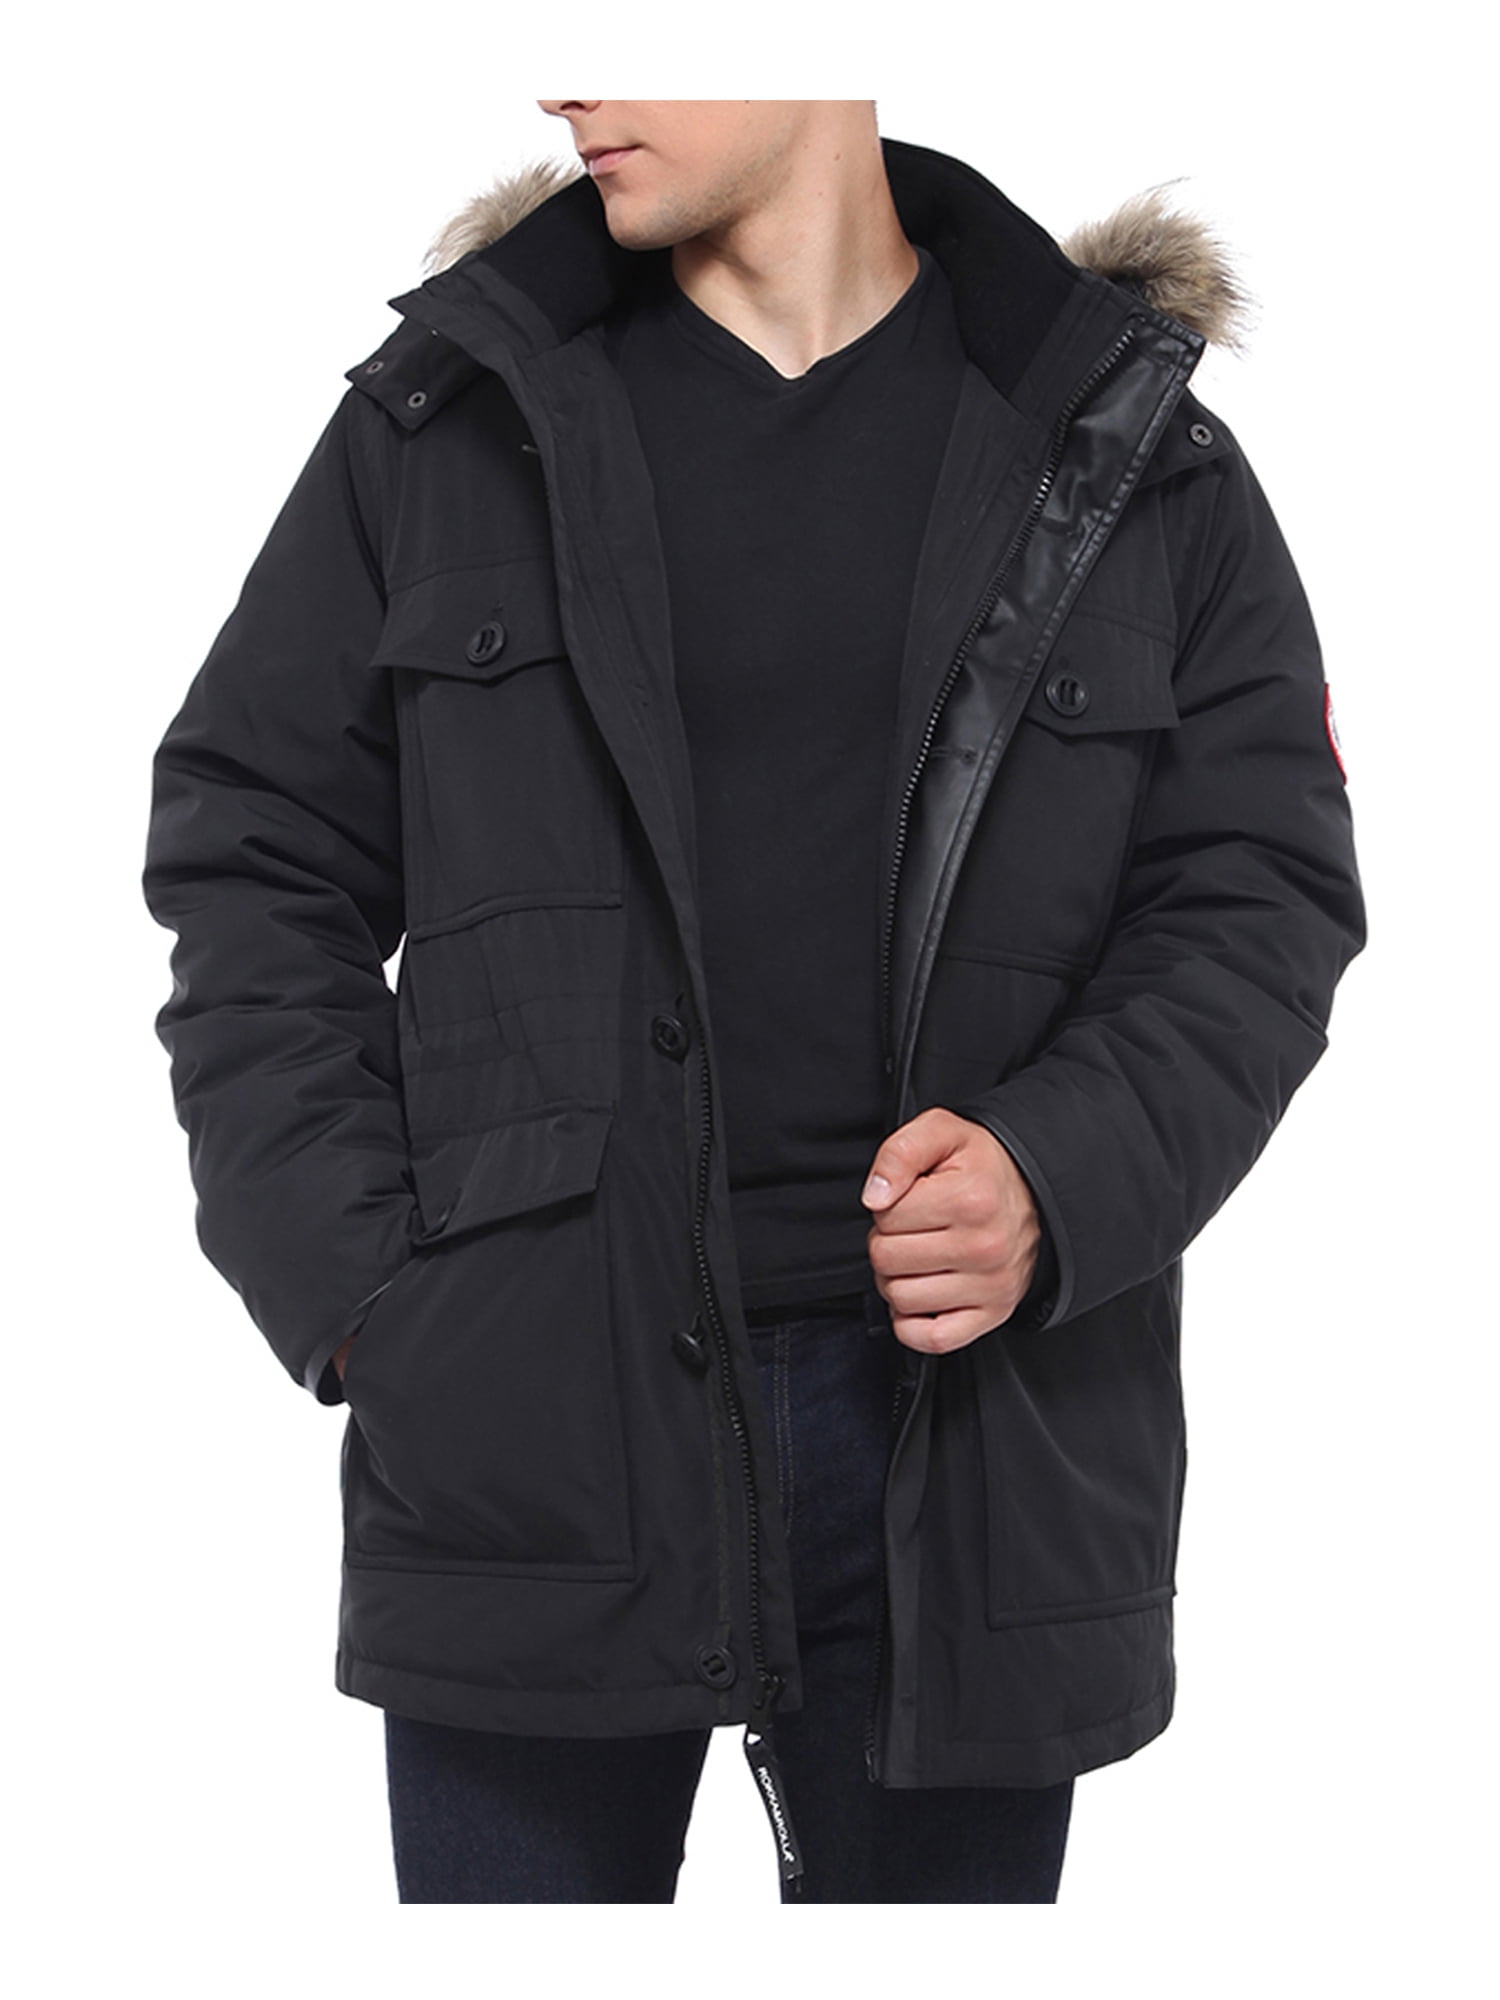 YONGM Mens Winter Jackets Coats Hooded Faux Fur Warm Outwear